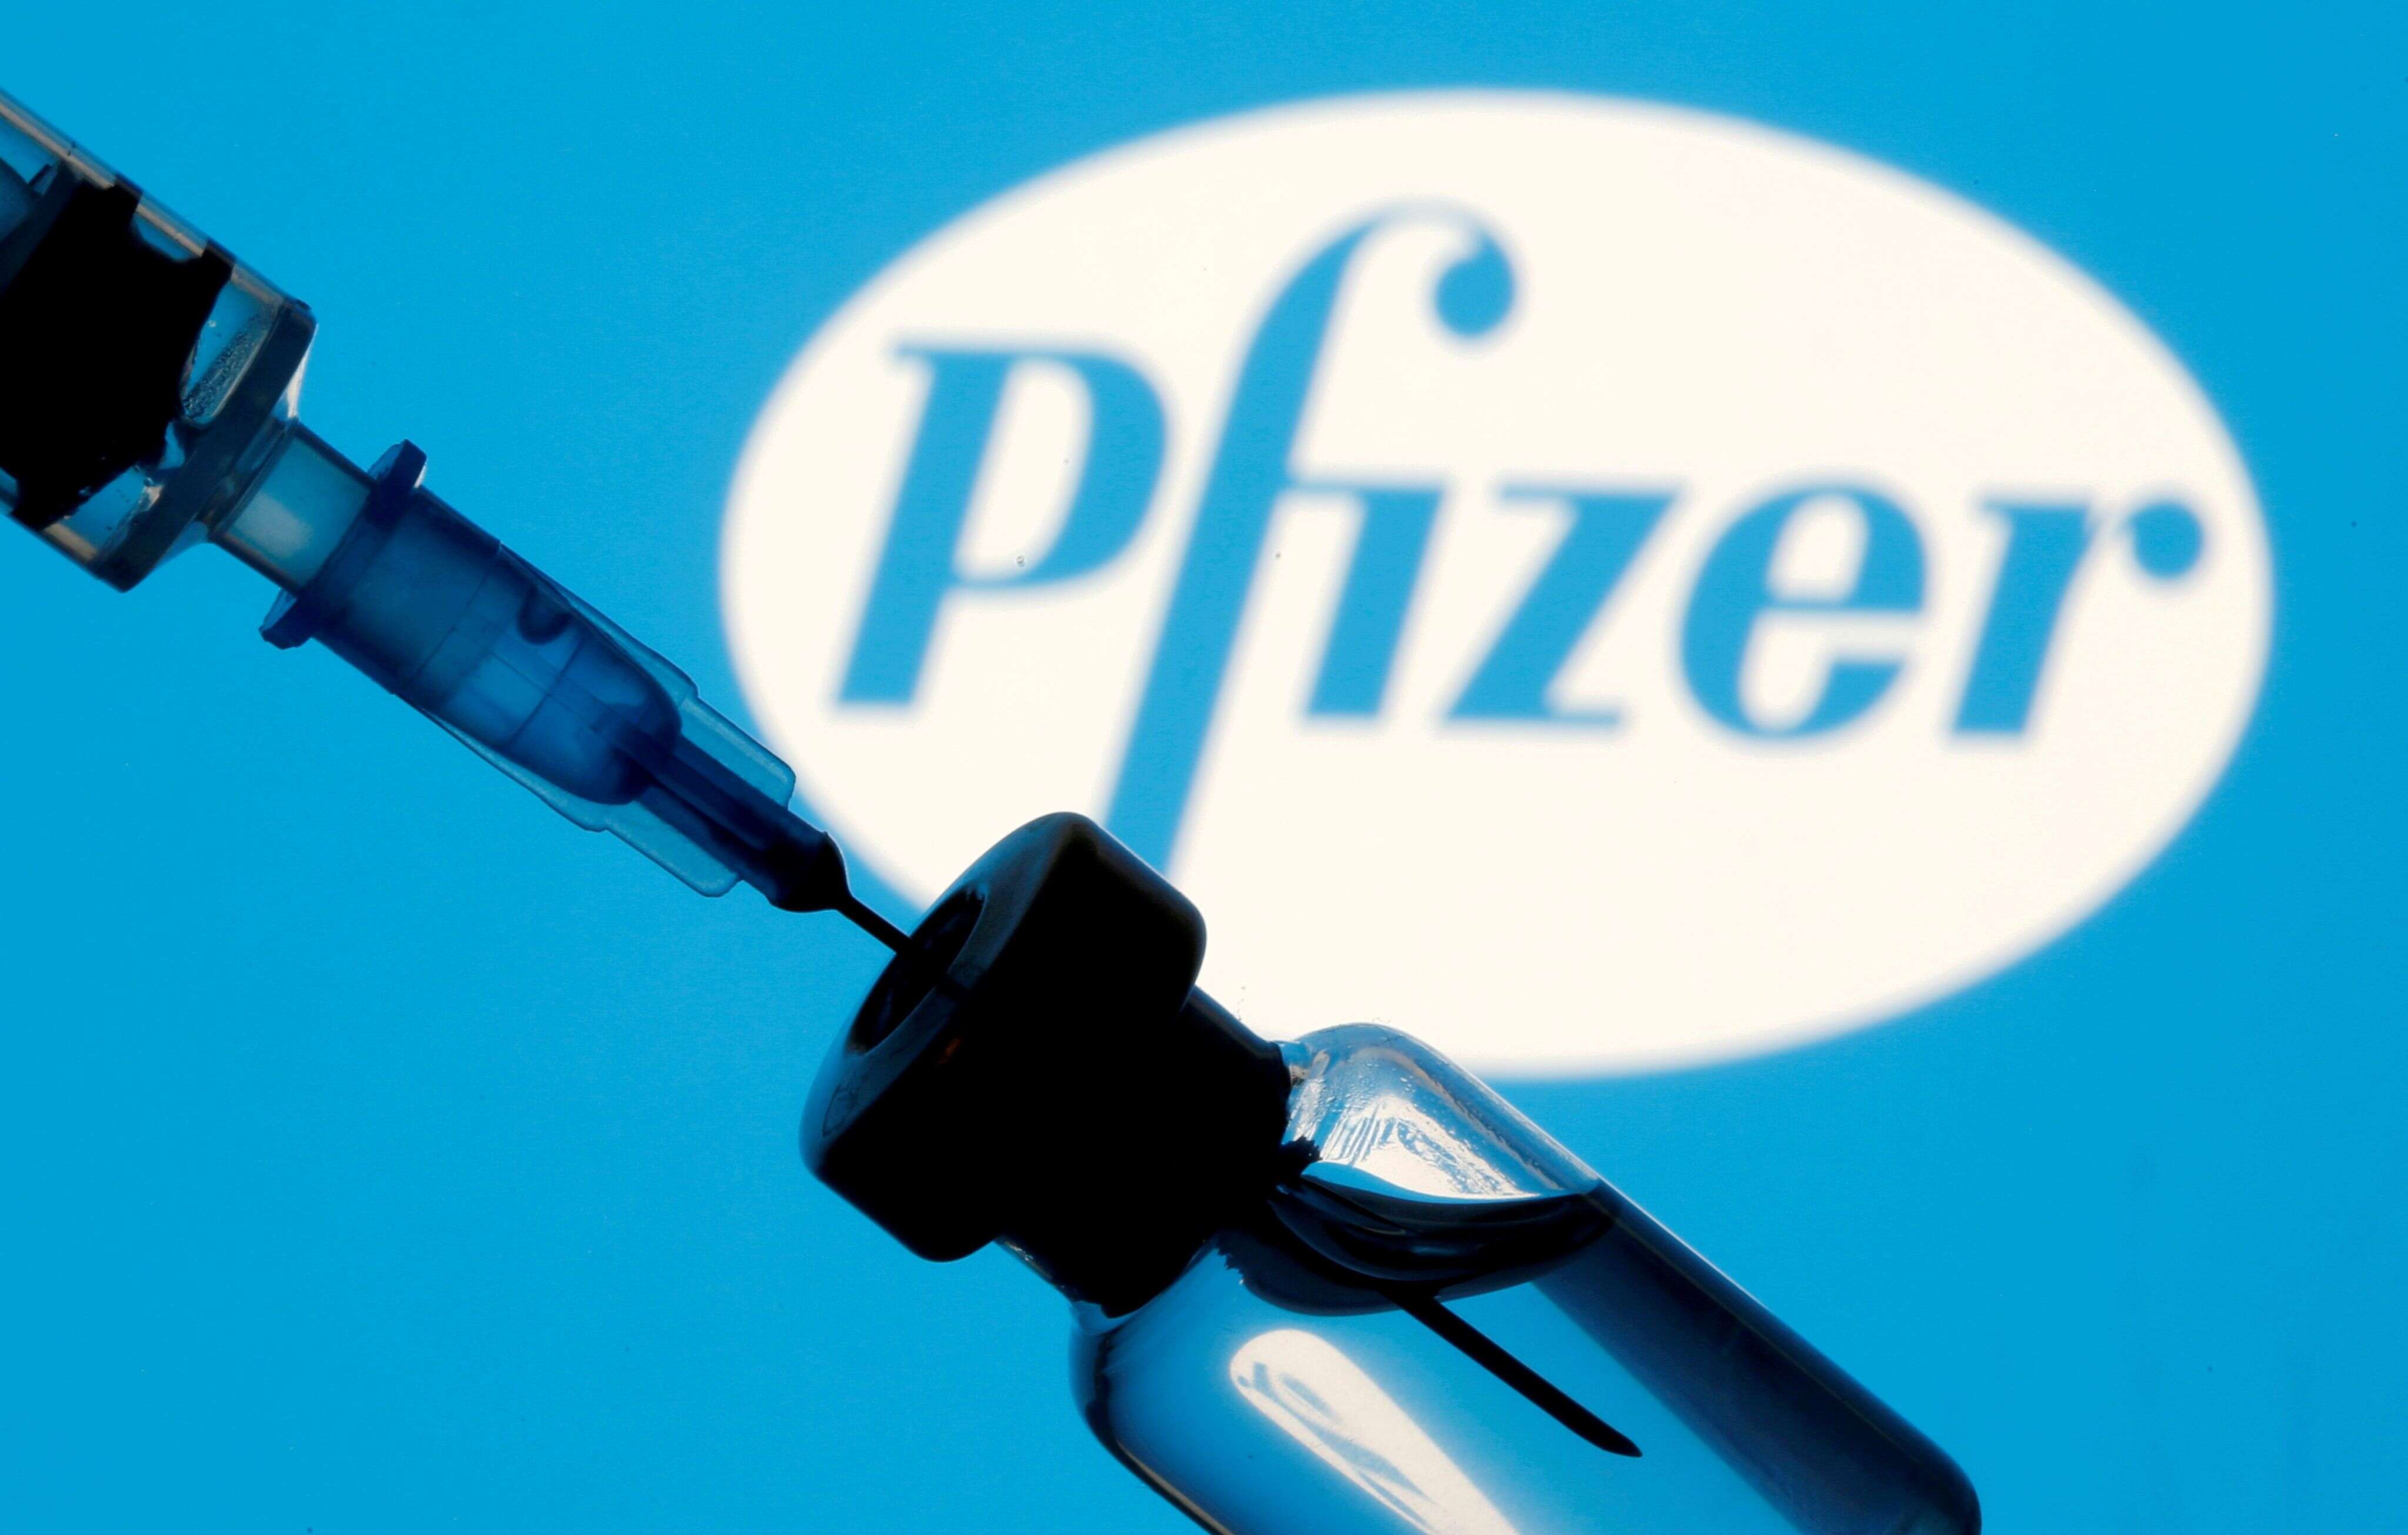 Après le succès de la conception du vaccin contre le Covid utilisation l'ARN messager, Pfizer va avoir recours à la même technologie pour mettre au point un sérum contre la grippe (photo d'illustration prise en Bosnie-Herzégovine).